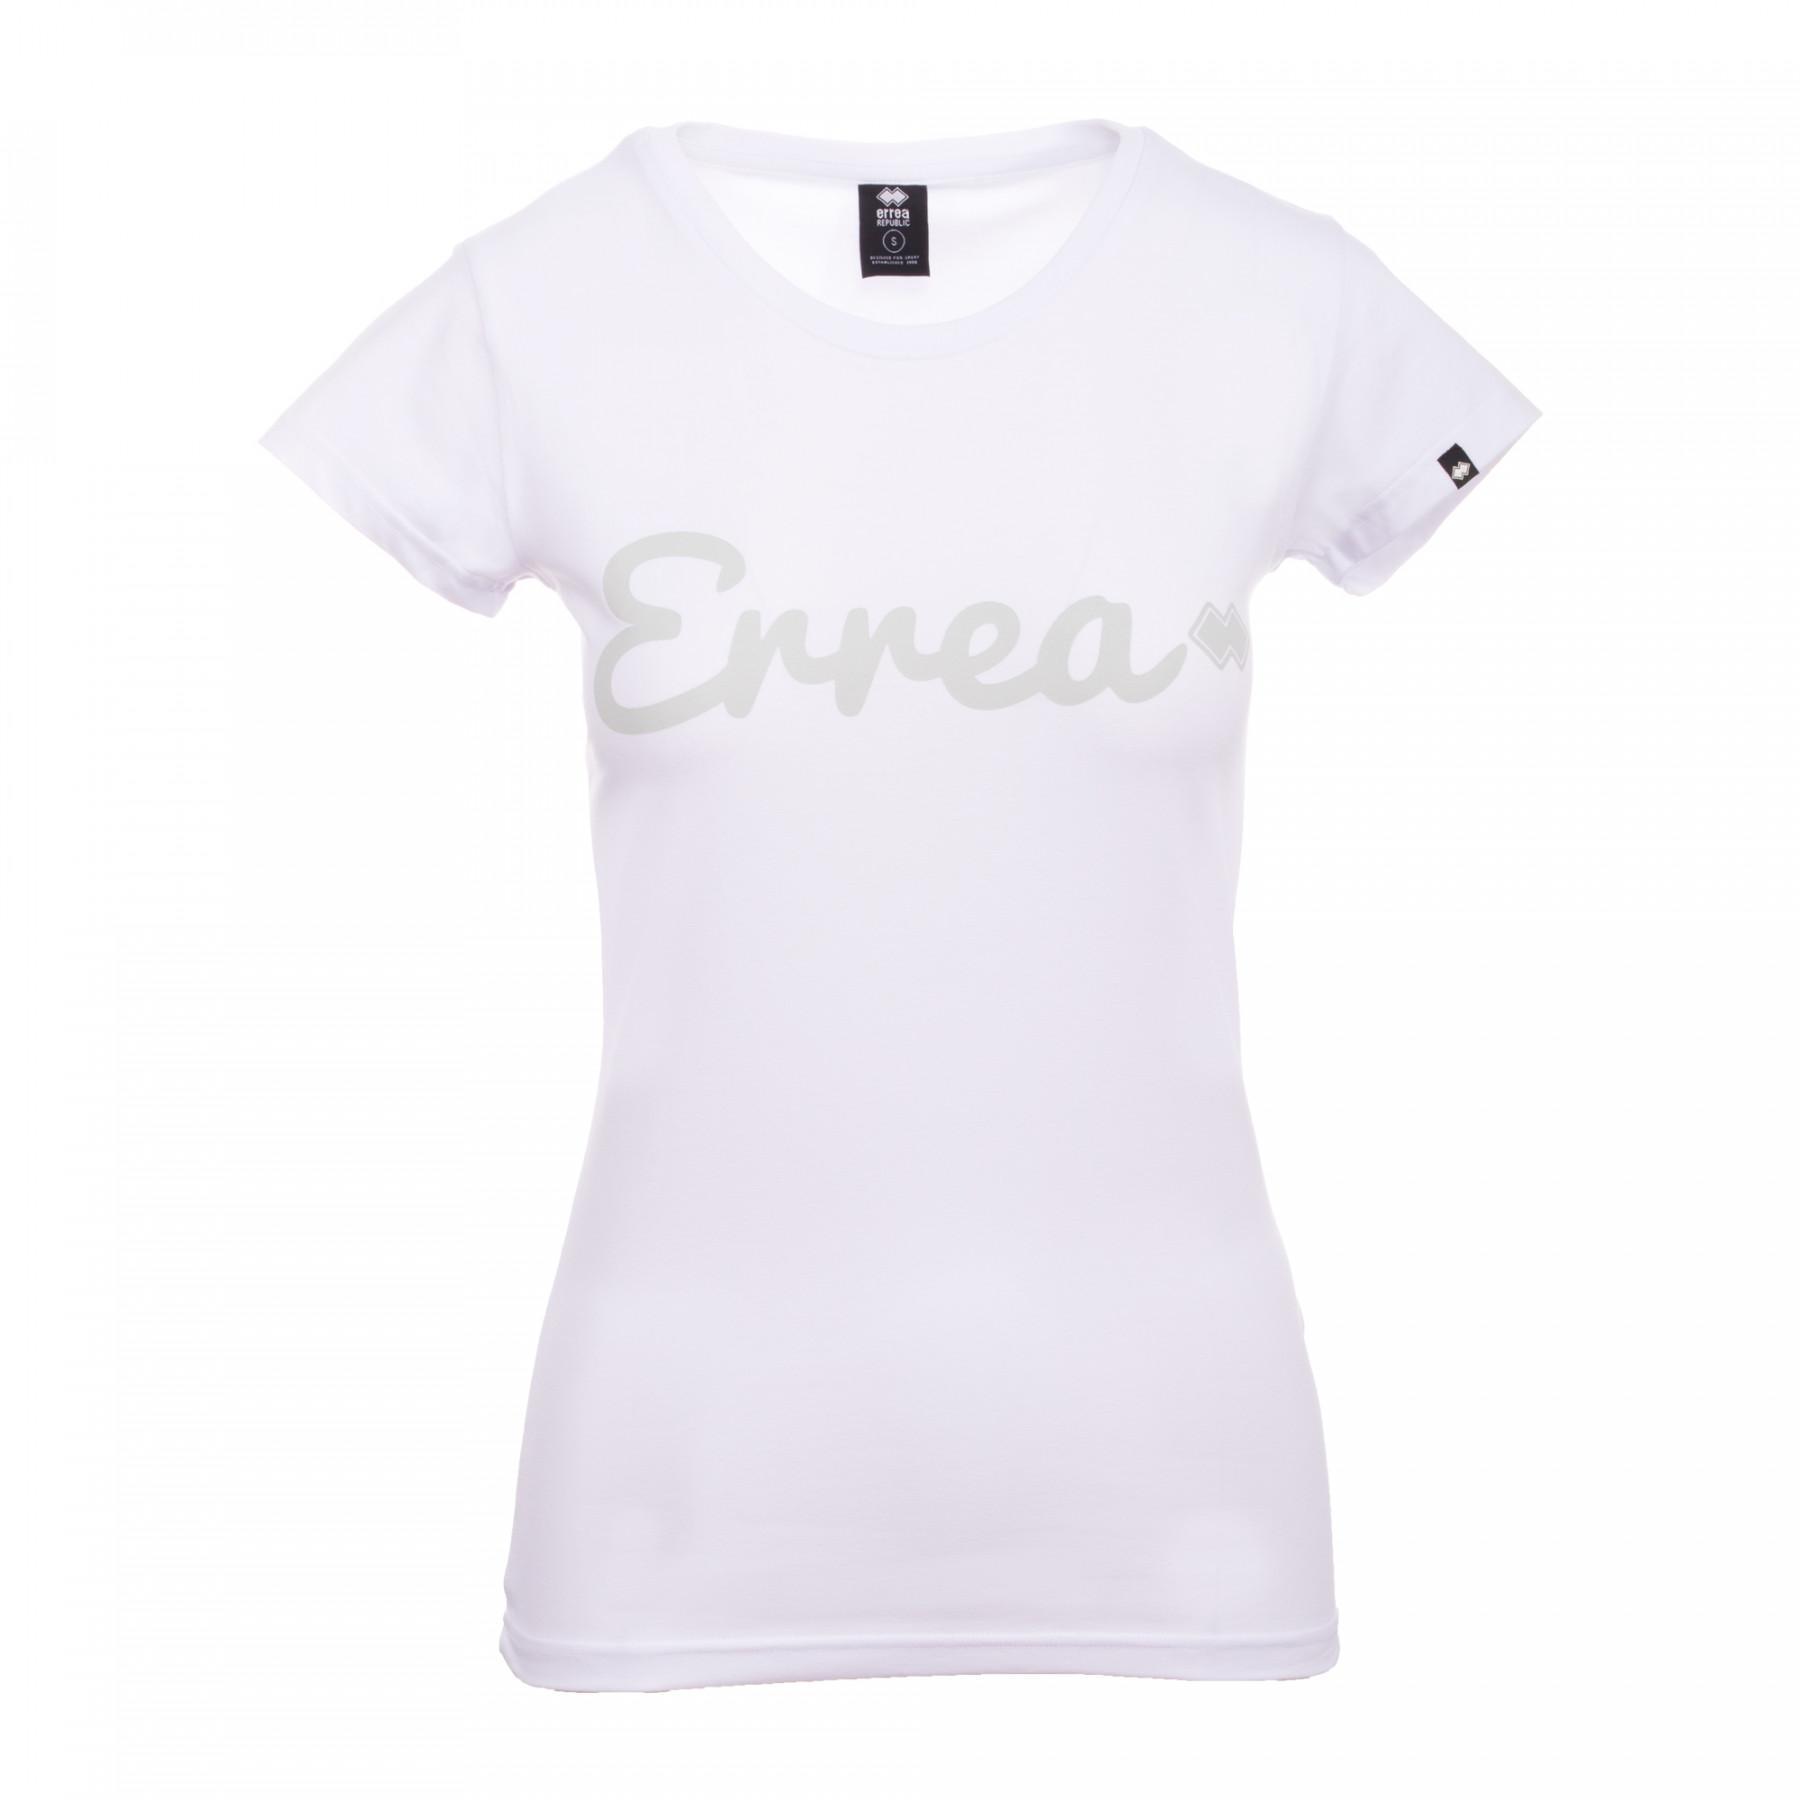 T-shirt för kvinnor Errea trend